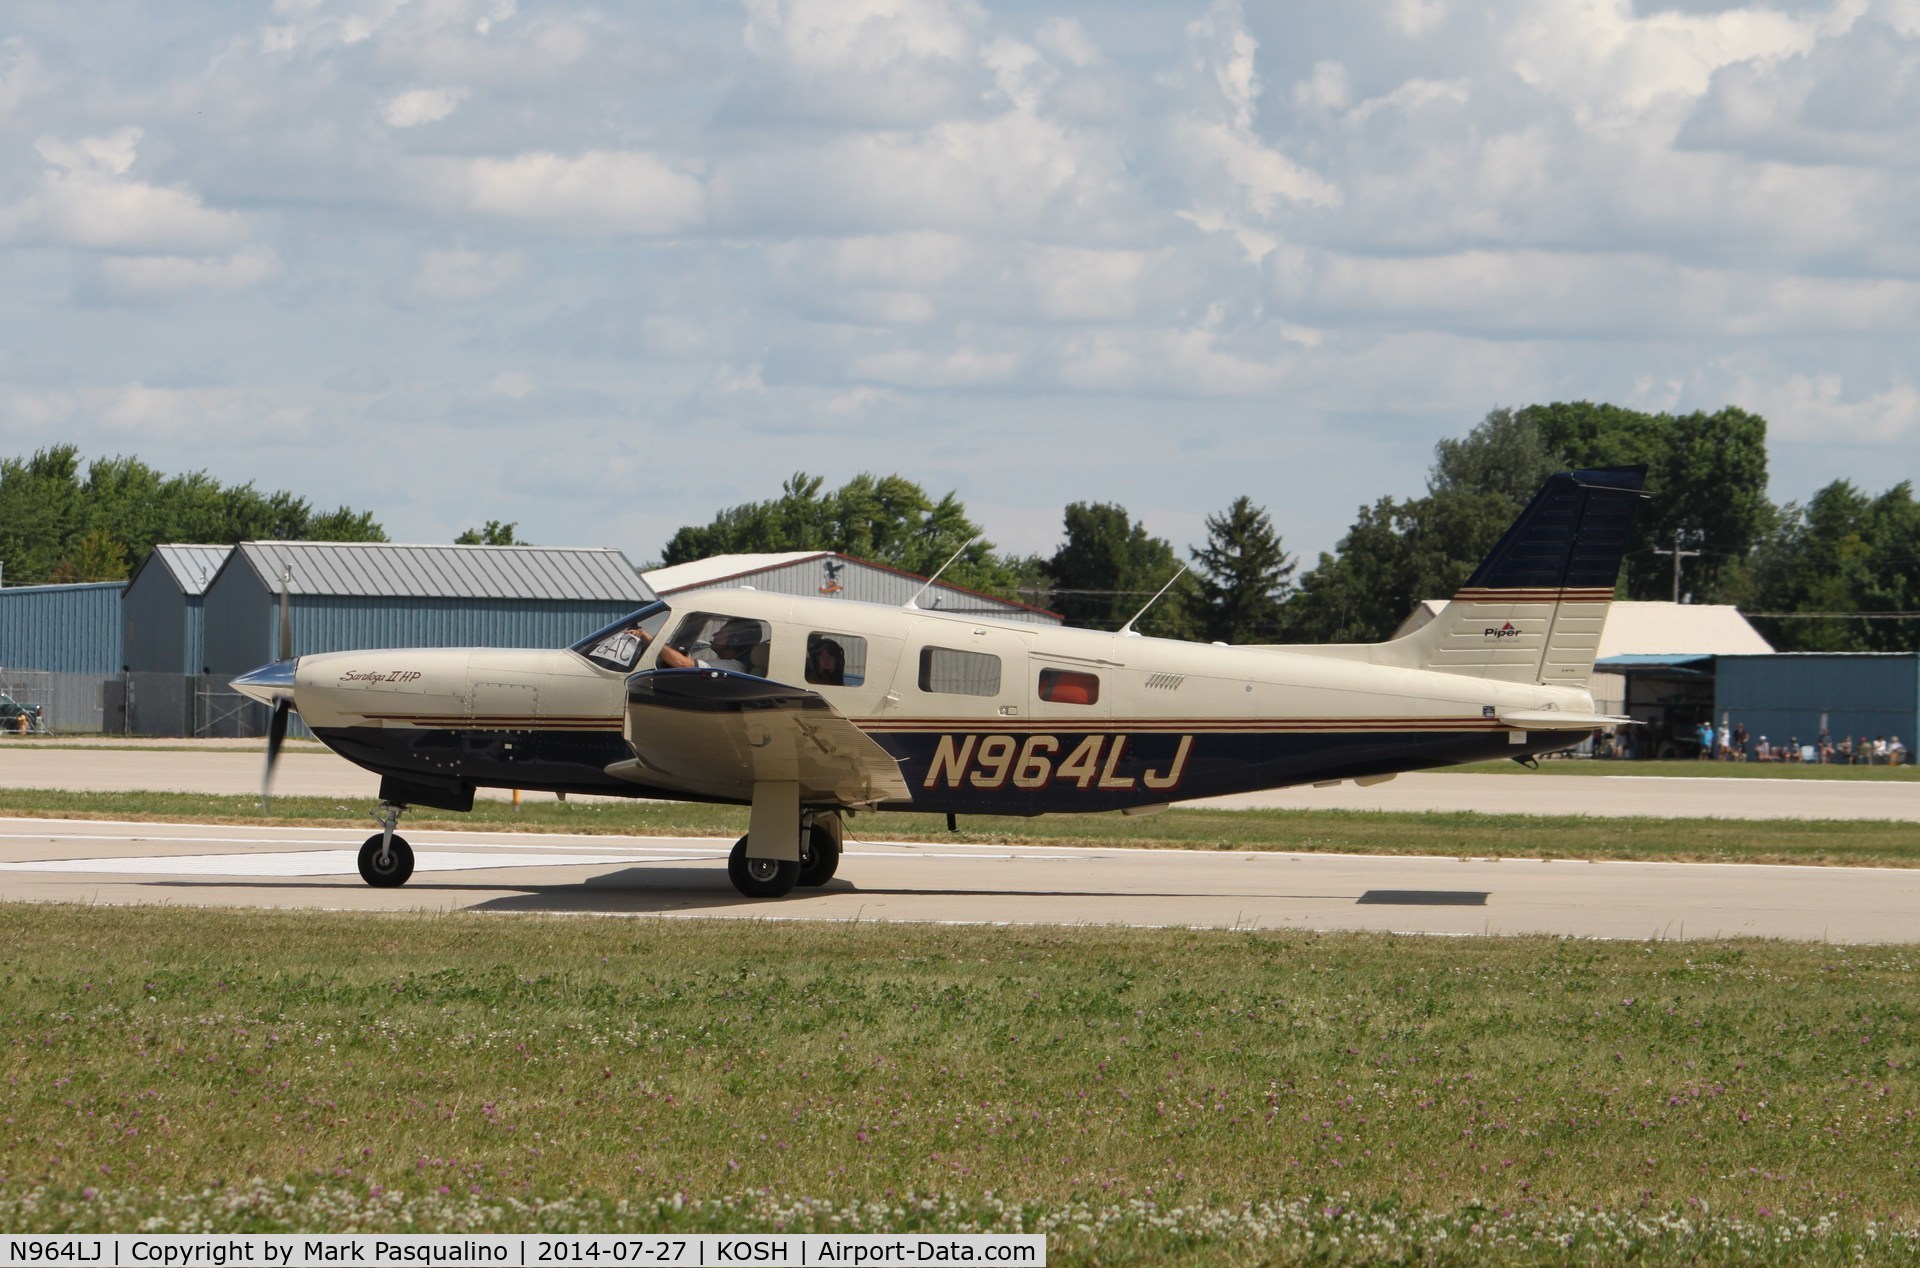 N964LJ, 1997 Piper PA-32R-301 C/N 3246082, Piper PA-32R-301